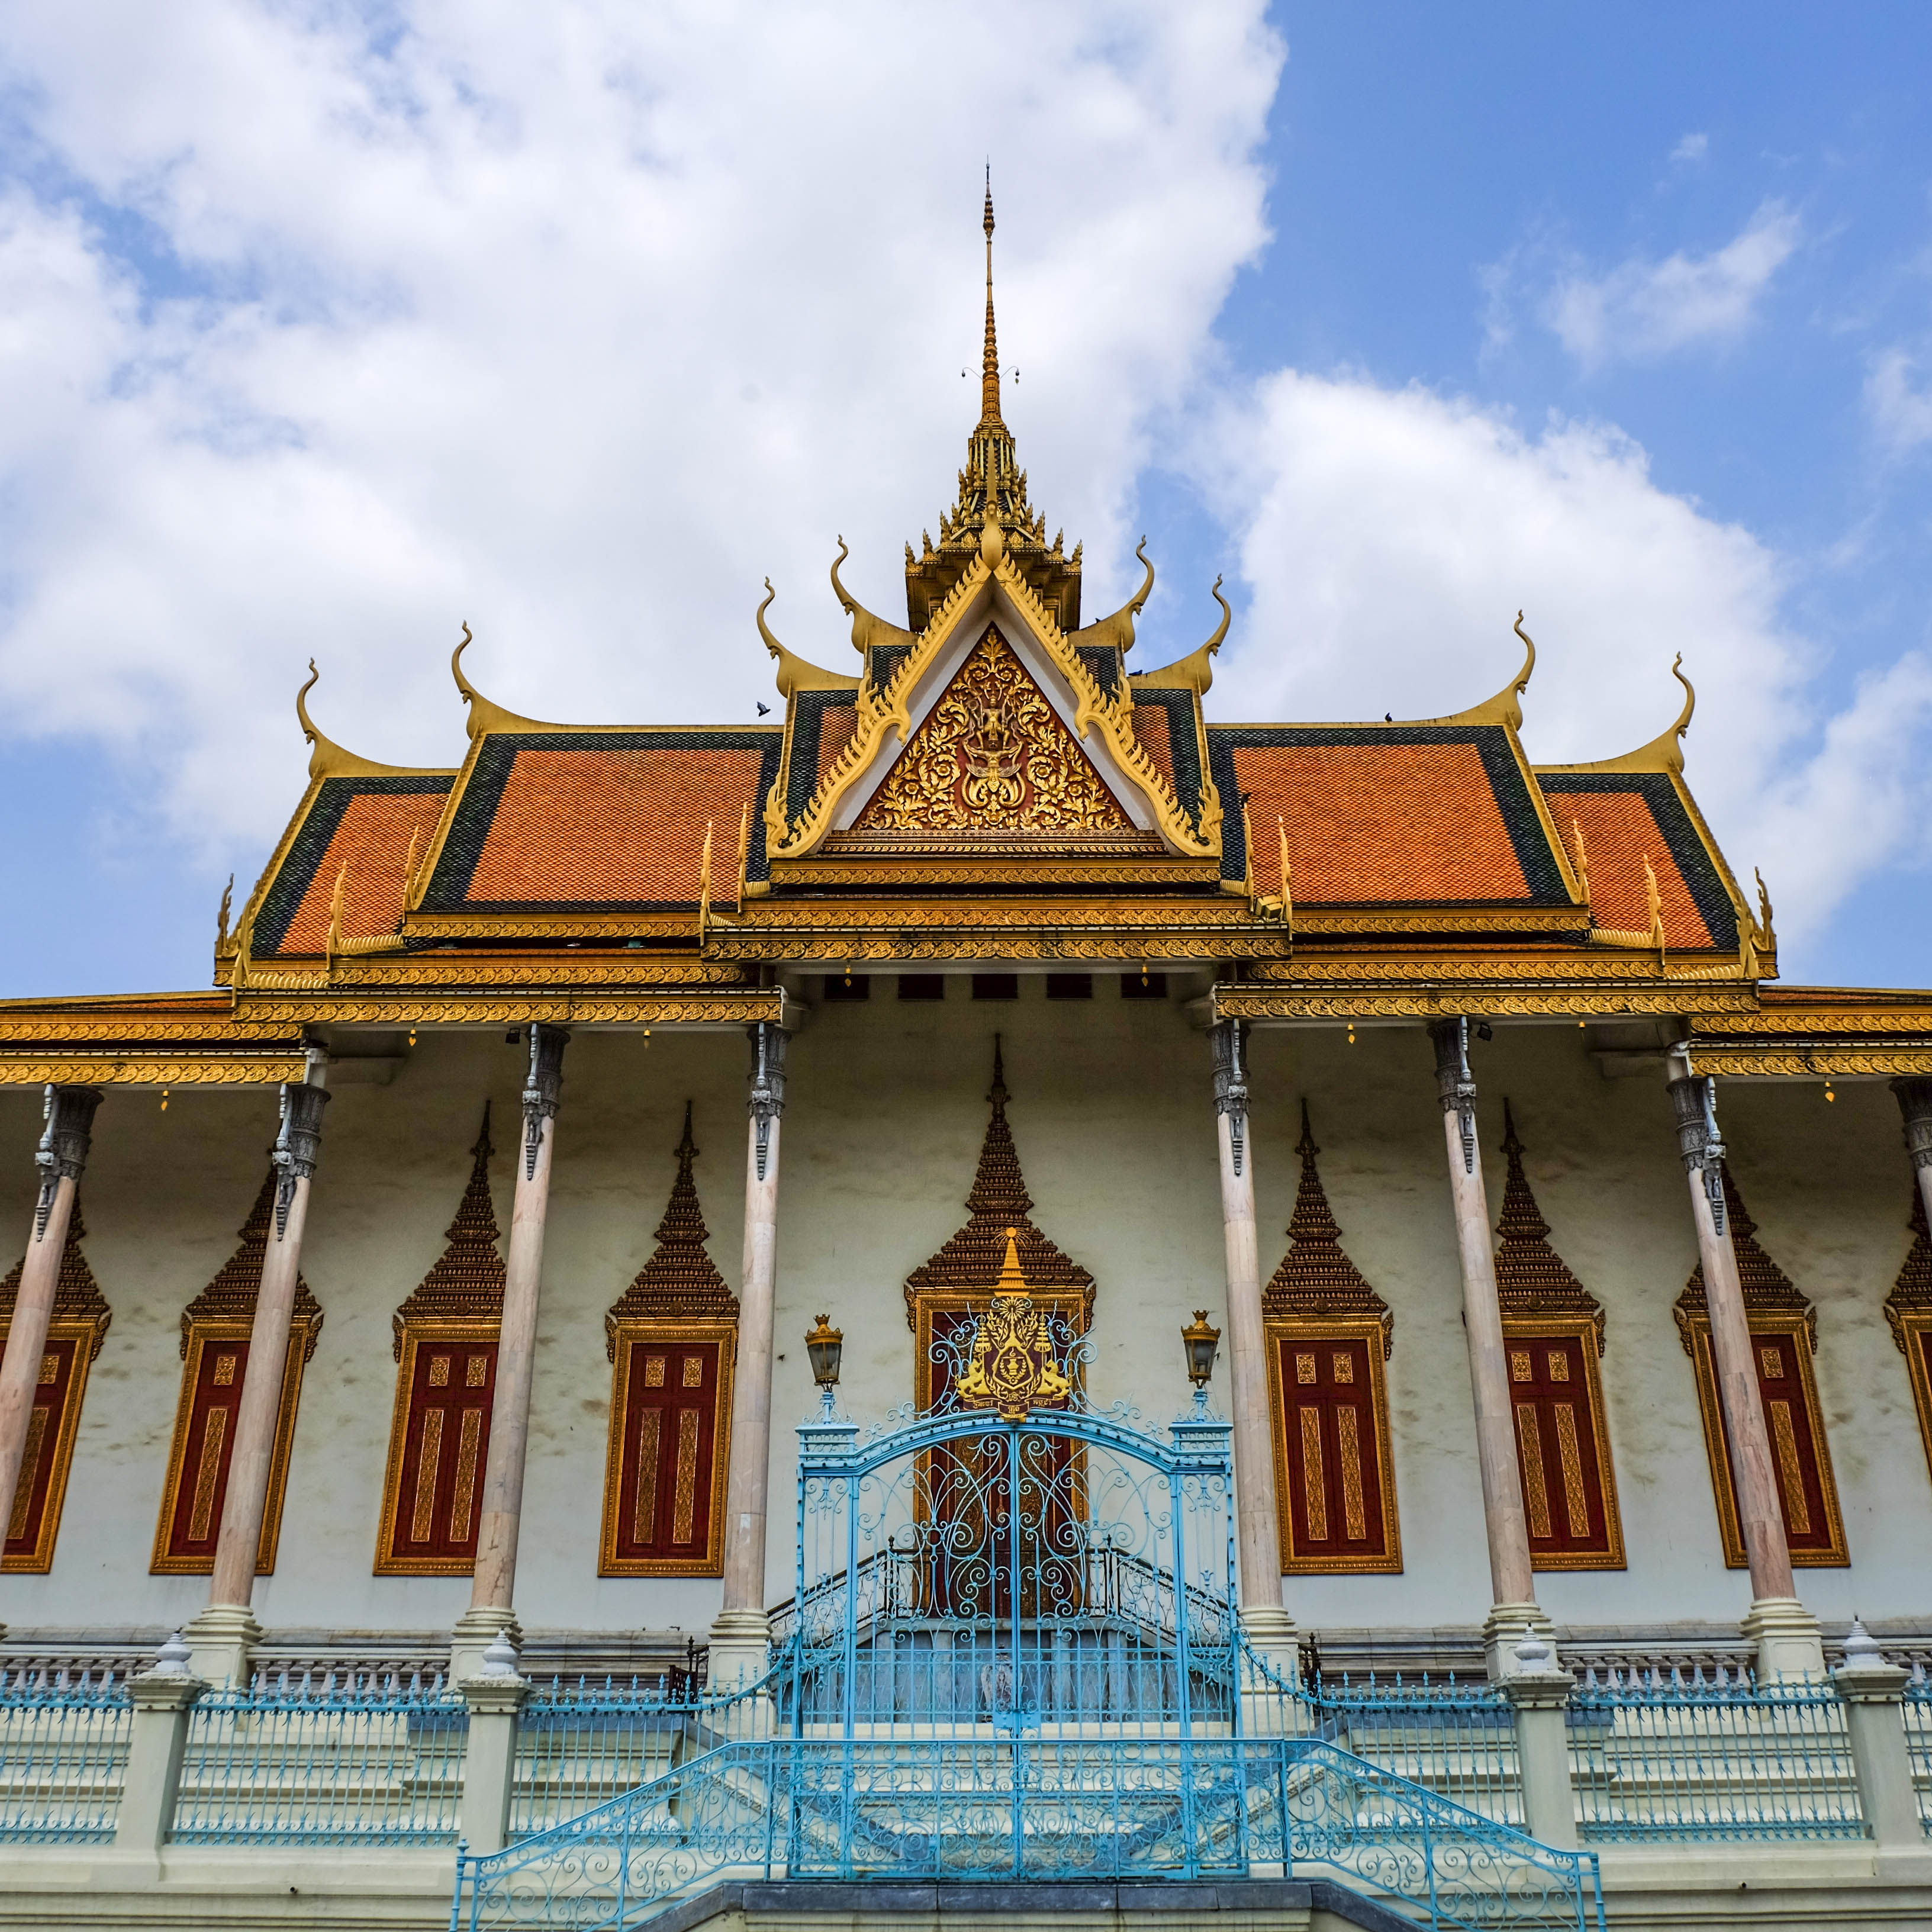 Phnom Penh Architecture - Silver Pagoda